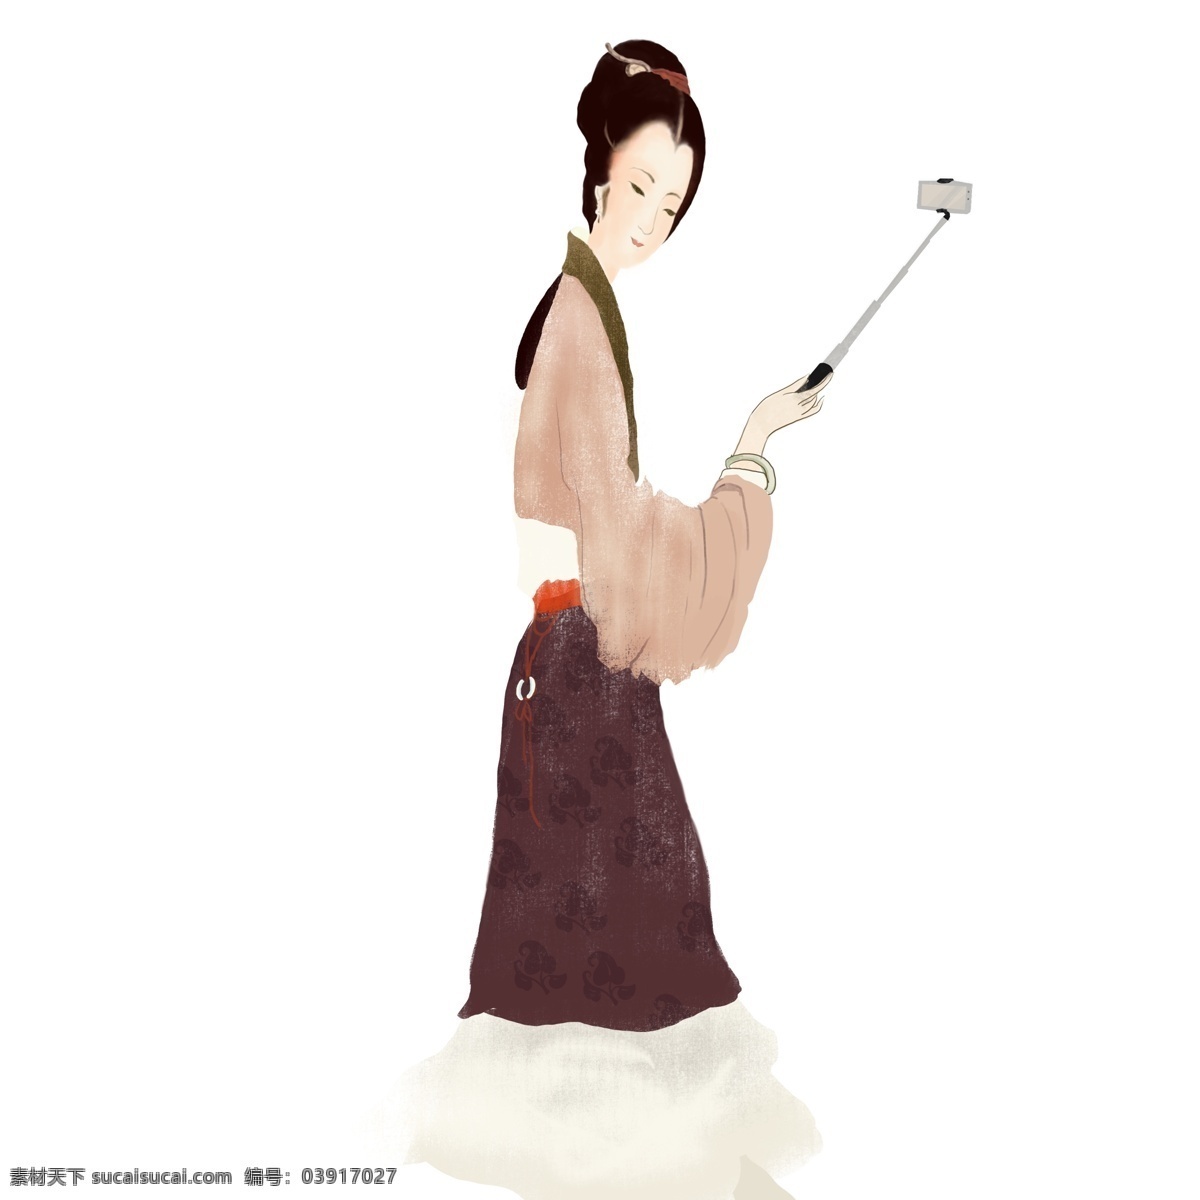 创意 手绘 自拍 仕女 人物 中国风 古风 插画 复古 女人 人物设计 自拍杆